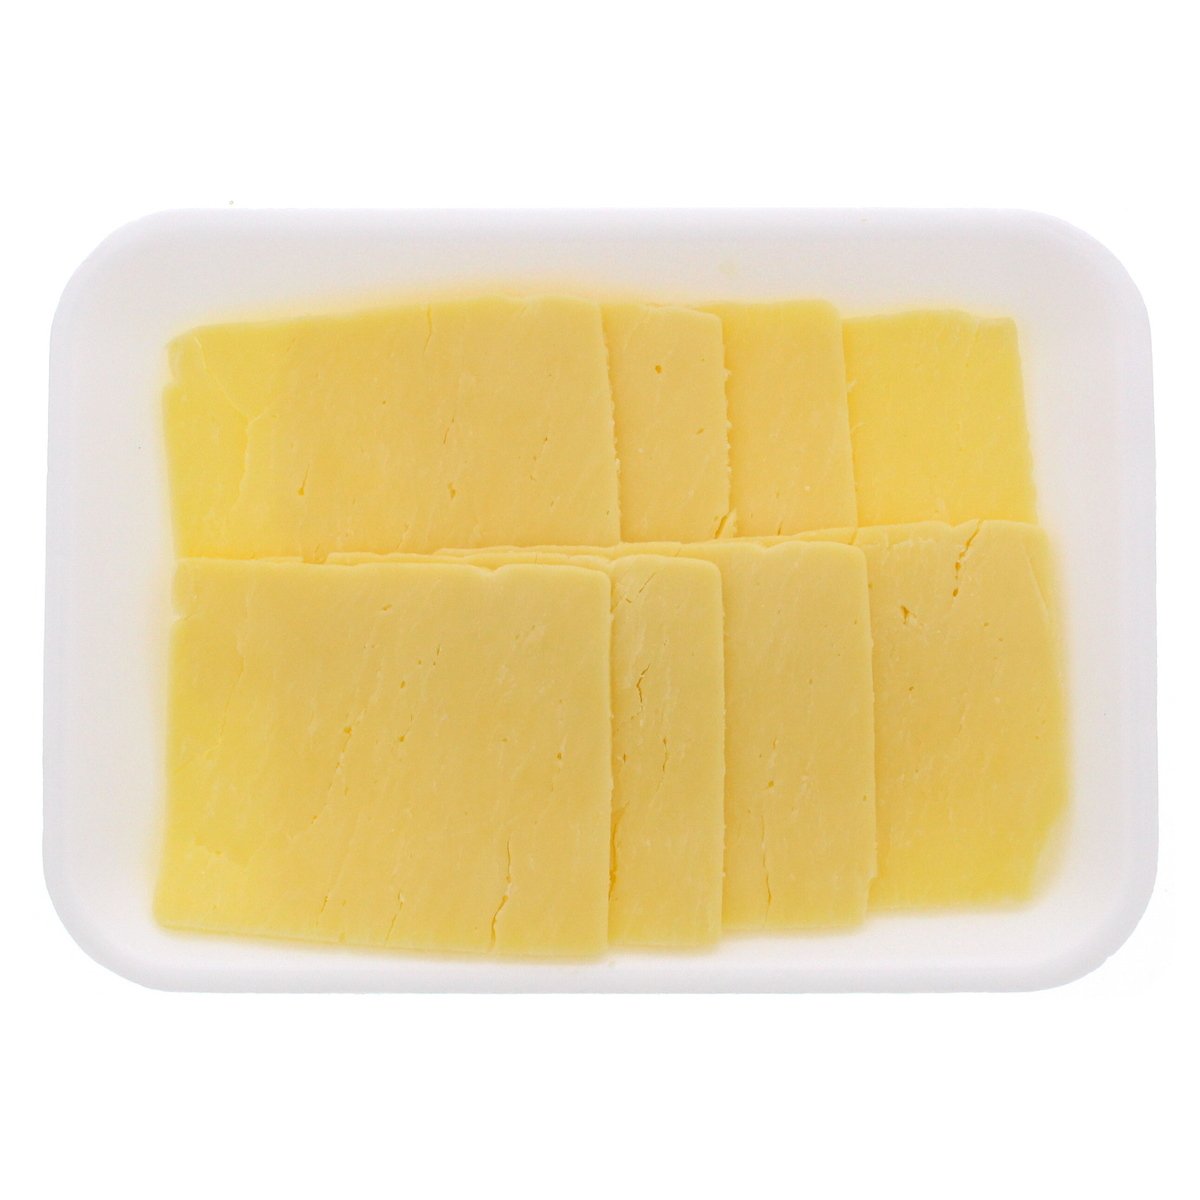 اشتري قم بشراء شرائح جبن بيجا شيدر الأسترالية 250 جم Online at Best Price من الموقع - من لولو هايبر ماركت Australian&NZ Cheese في الامارات